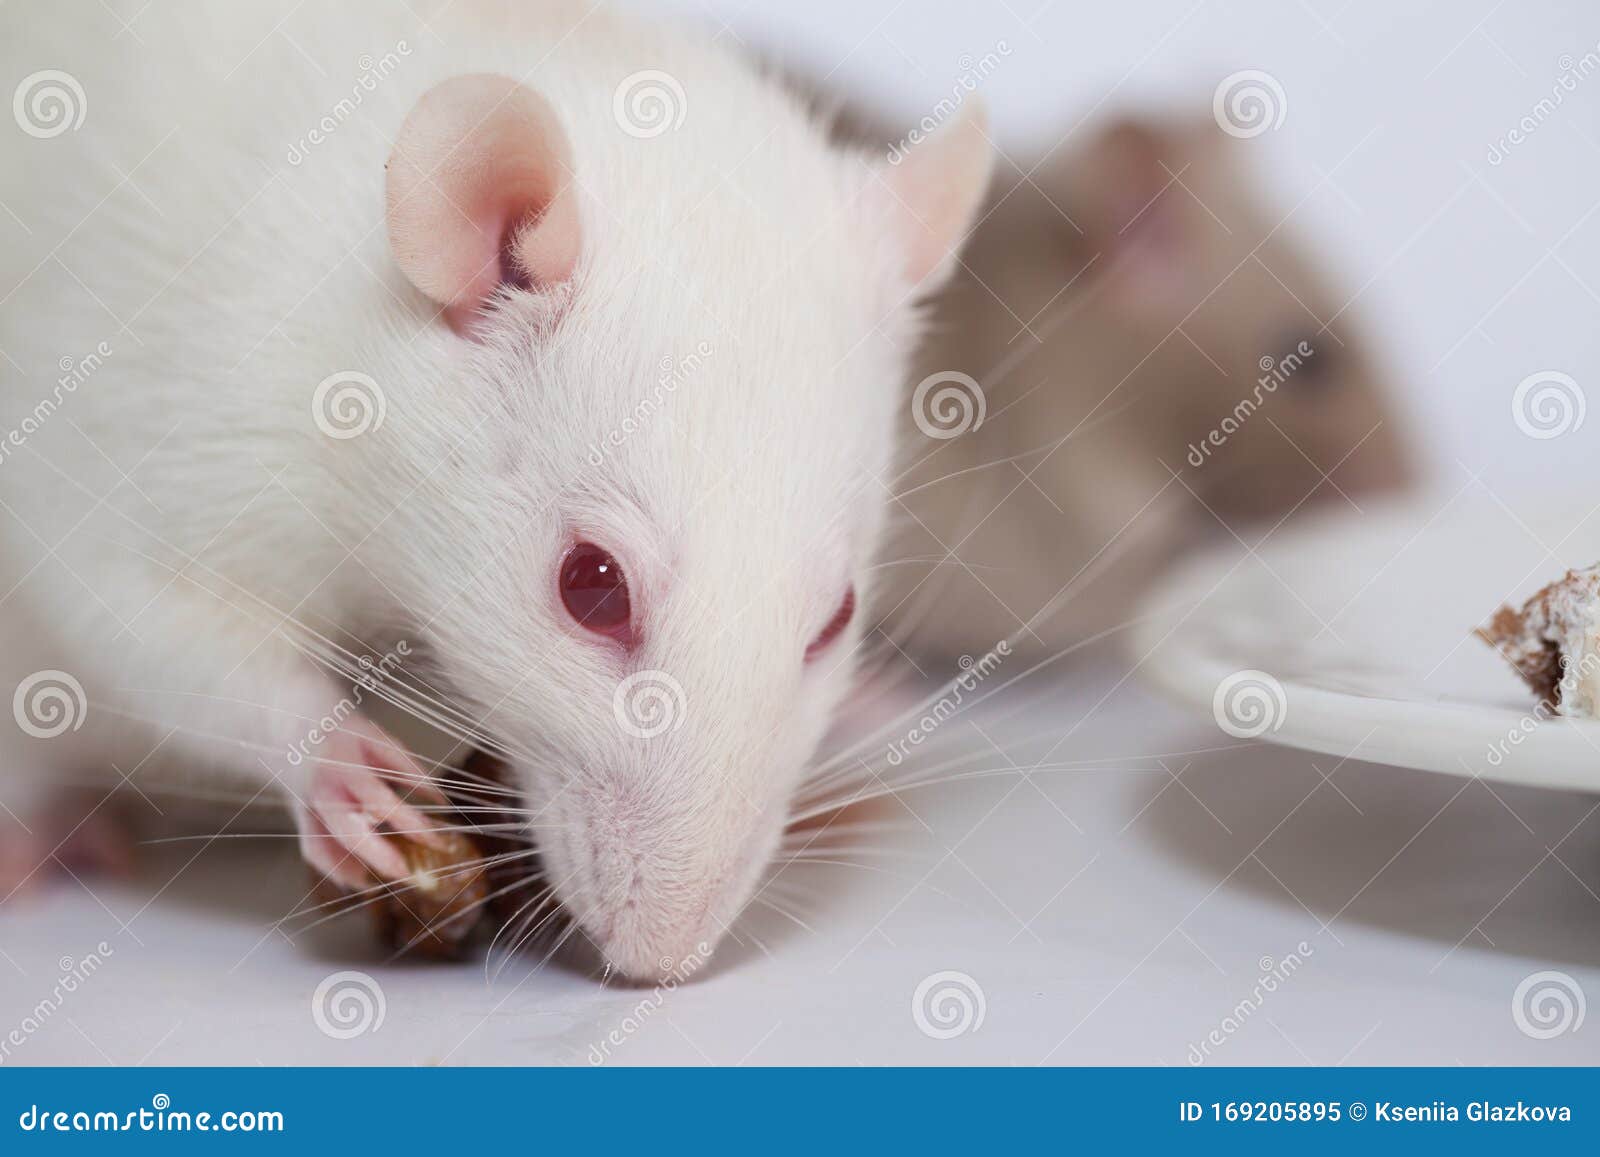 Сон белые крысы к чему снится женщине. Белая крыса с красными глазами. Белая мышка с красными глазами. Крыса домашняя белая с красными глазами. Мышка с красными глазами белая маленькая.